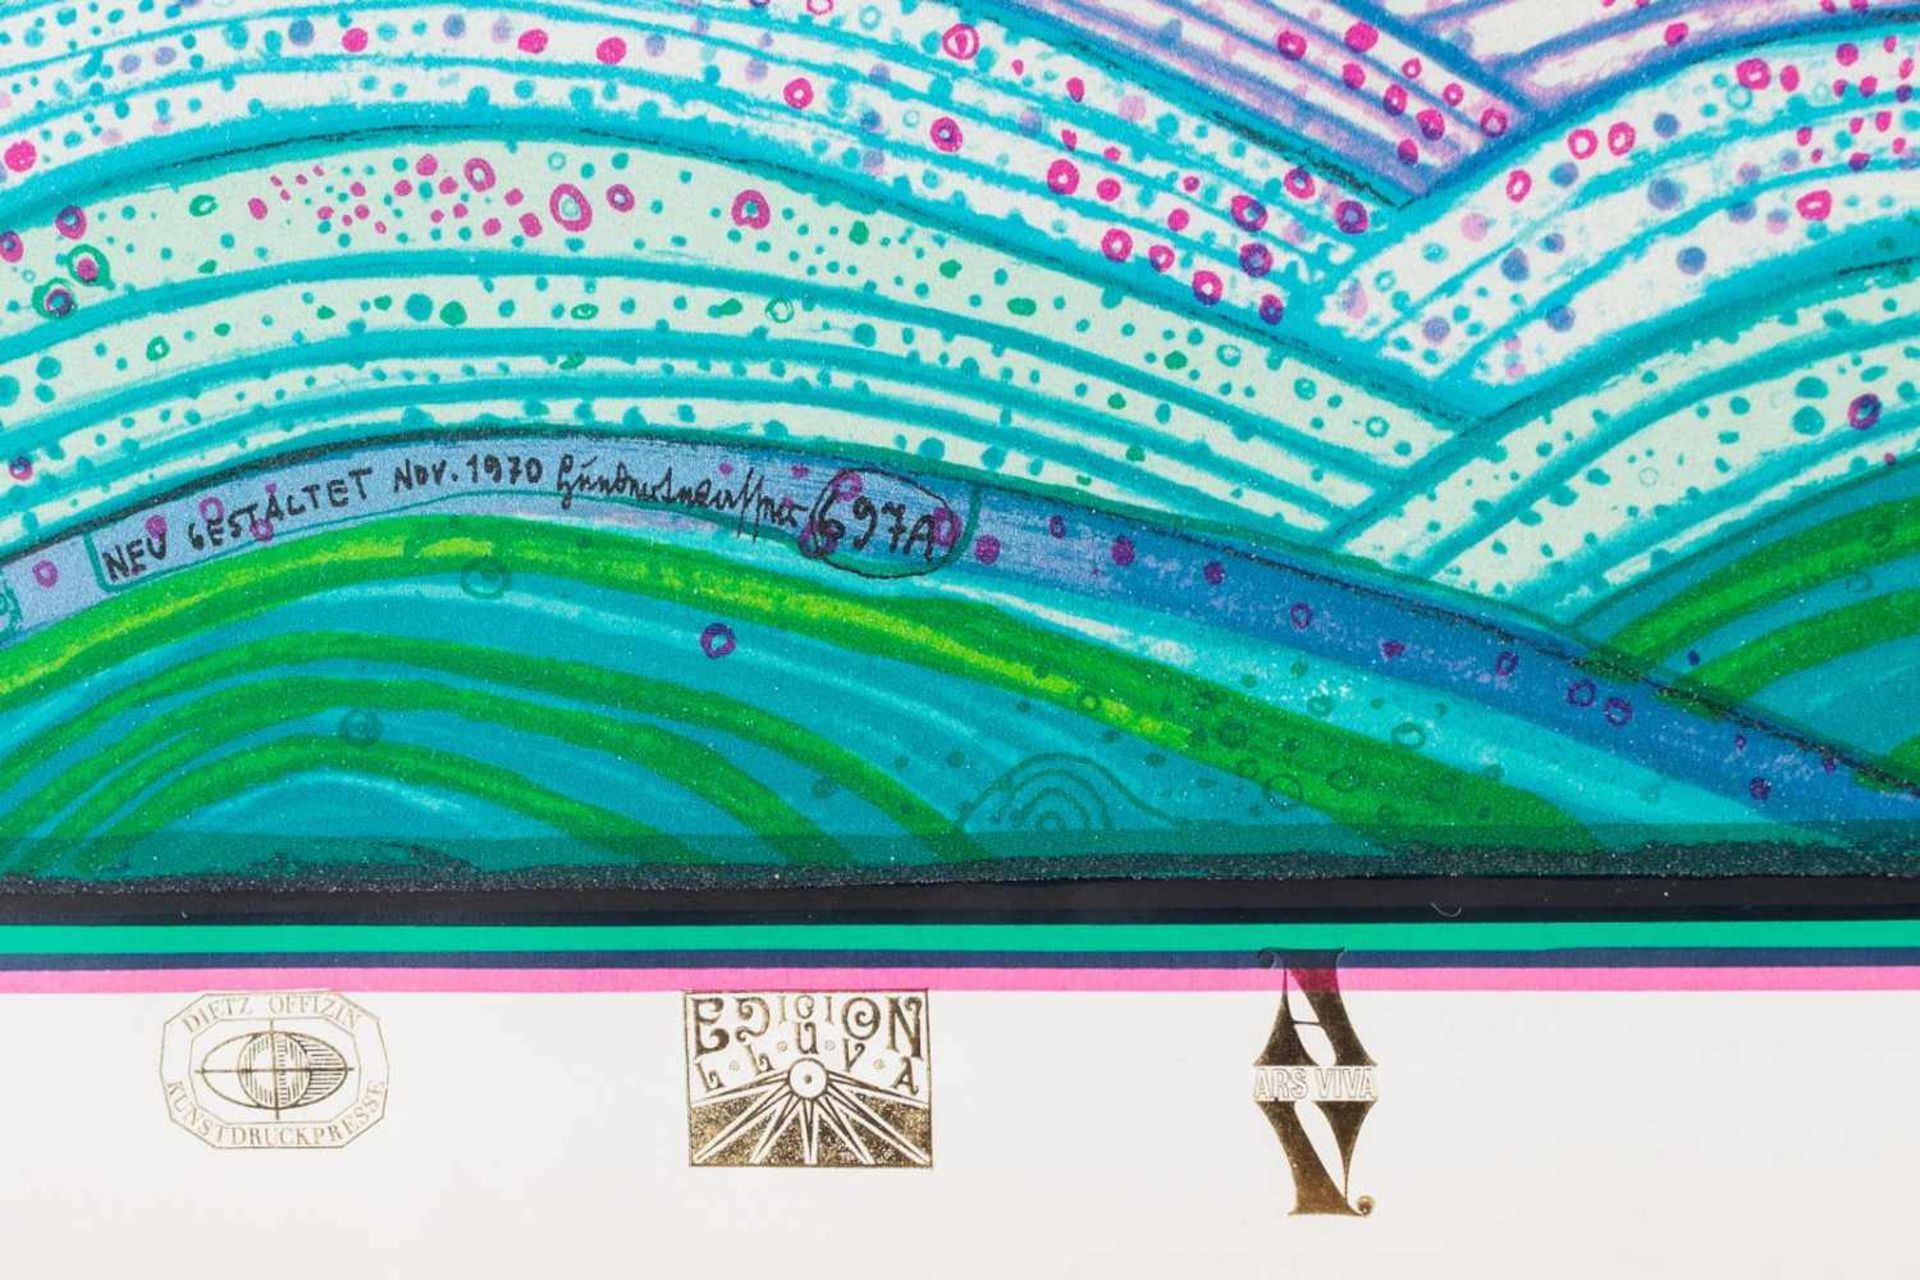 Friedensreich Hundertwasser, "Regentag auf Liebe Wellen", *"Regentag auf Liebe Wellen", Auflage - Bild 3 aus 3